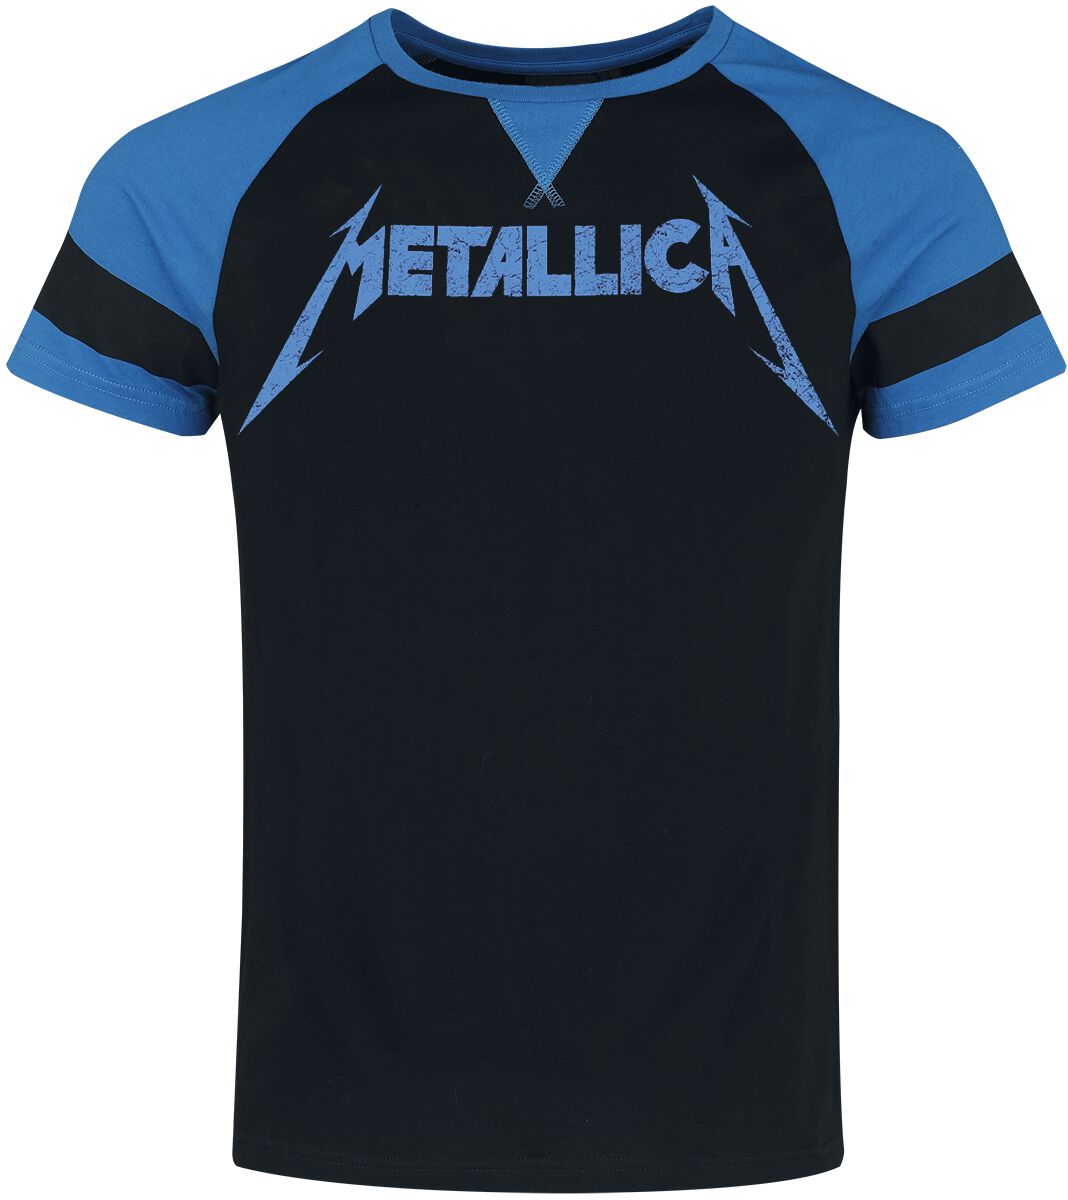 Metallica T-Shirt - EMP Signature Collection - S bis XXL - für Männer - Größe L - schwarz/blau  - EMP exklusives Merchandise!